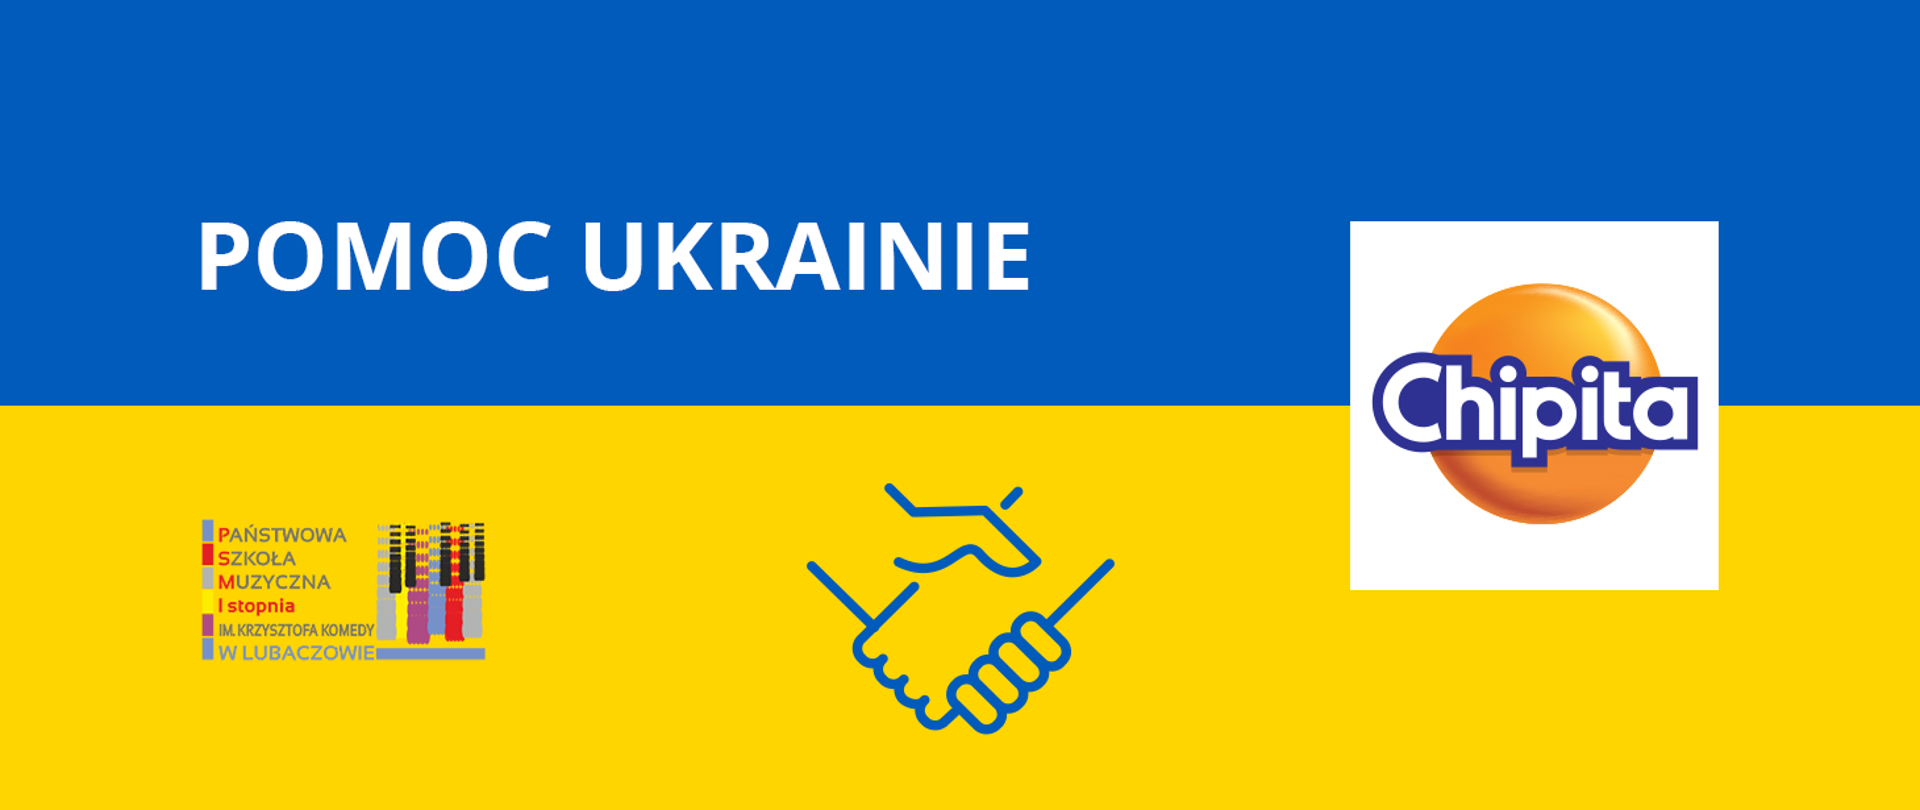 Grafika na tle barw Ukrainy z logo szkoły po lewej stronie i logo firmy Chipita po prawej stronie z tekstem "Pomoc Ukrainie" oraz ikoną dłoni na środku